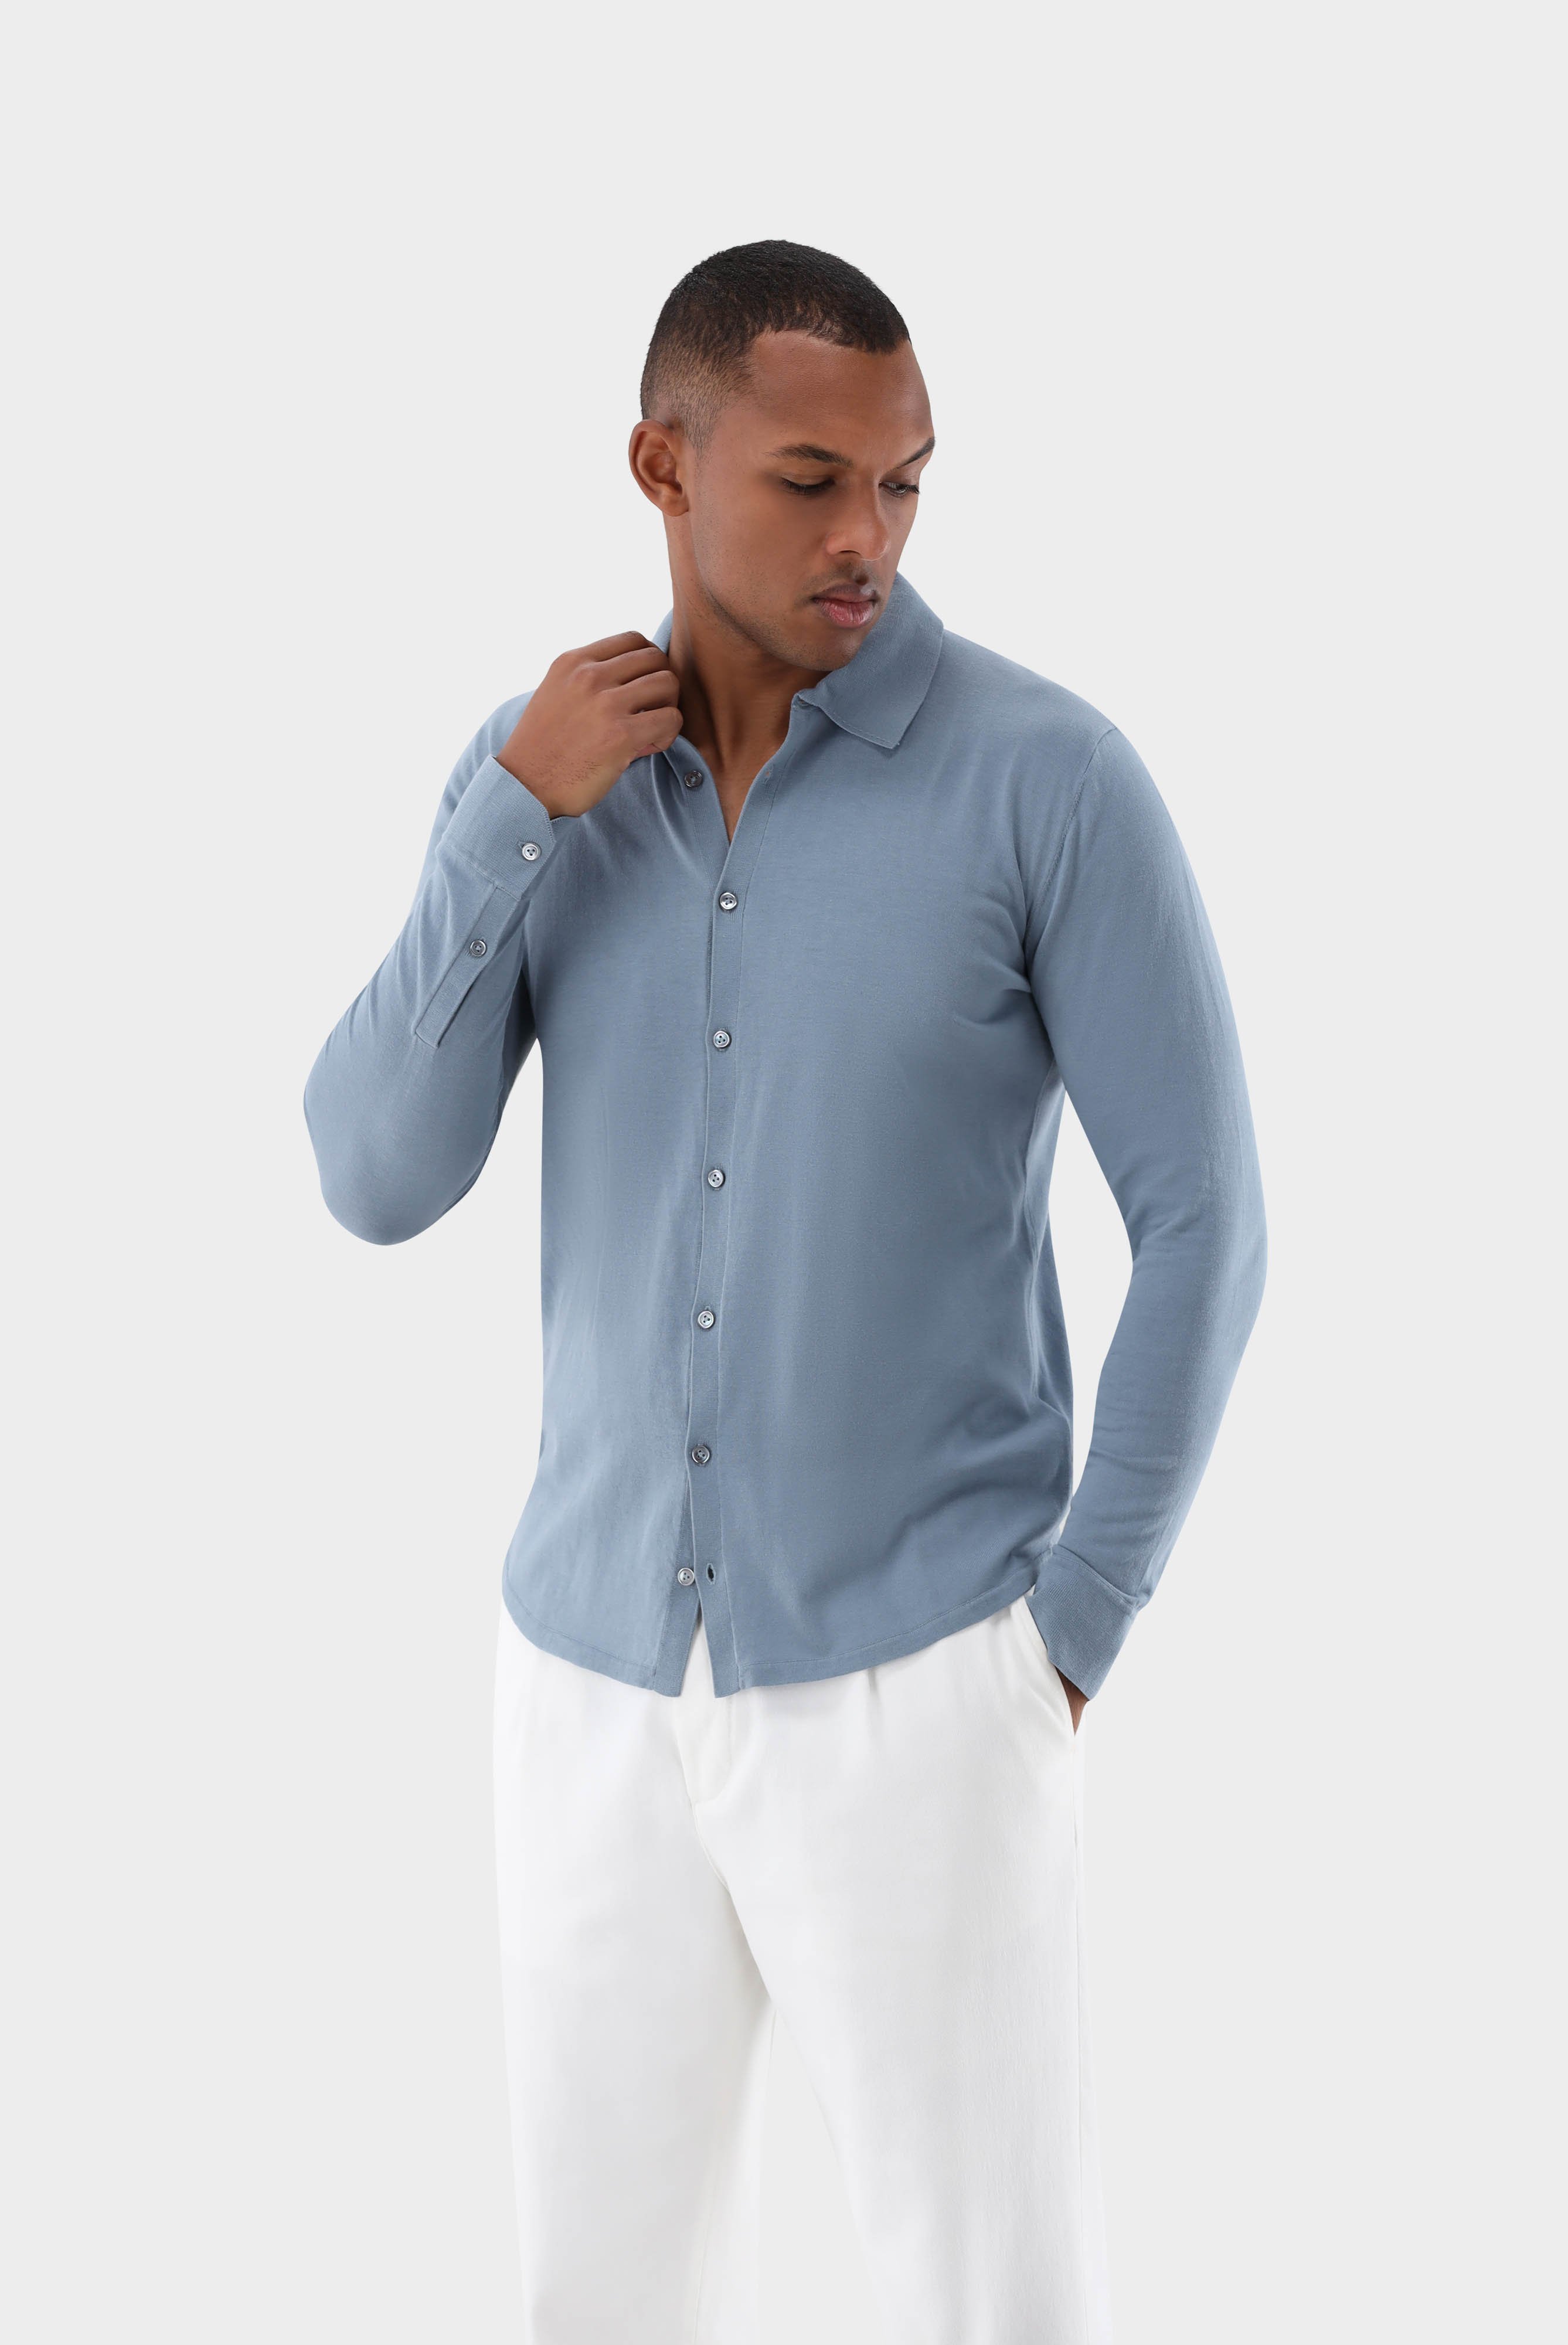 Bügelleichte Hemden+Strick Hemd aus Air Cotton+82.8611..S00174.730.L